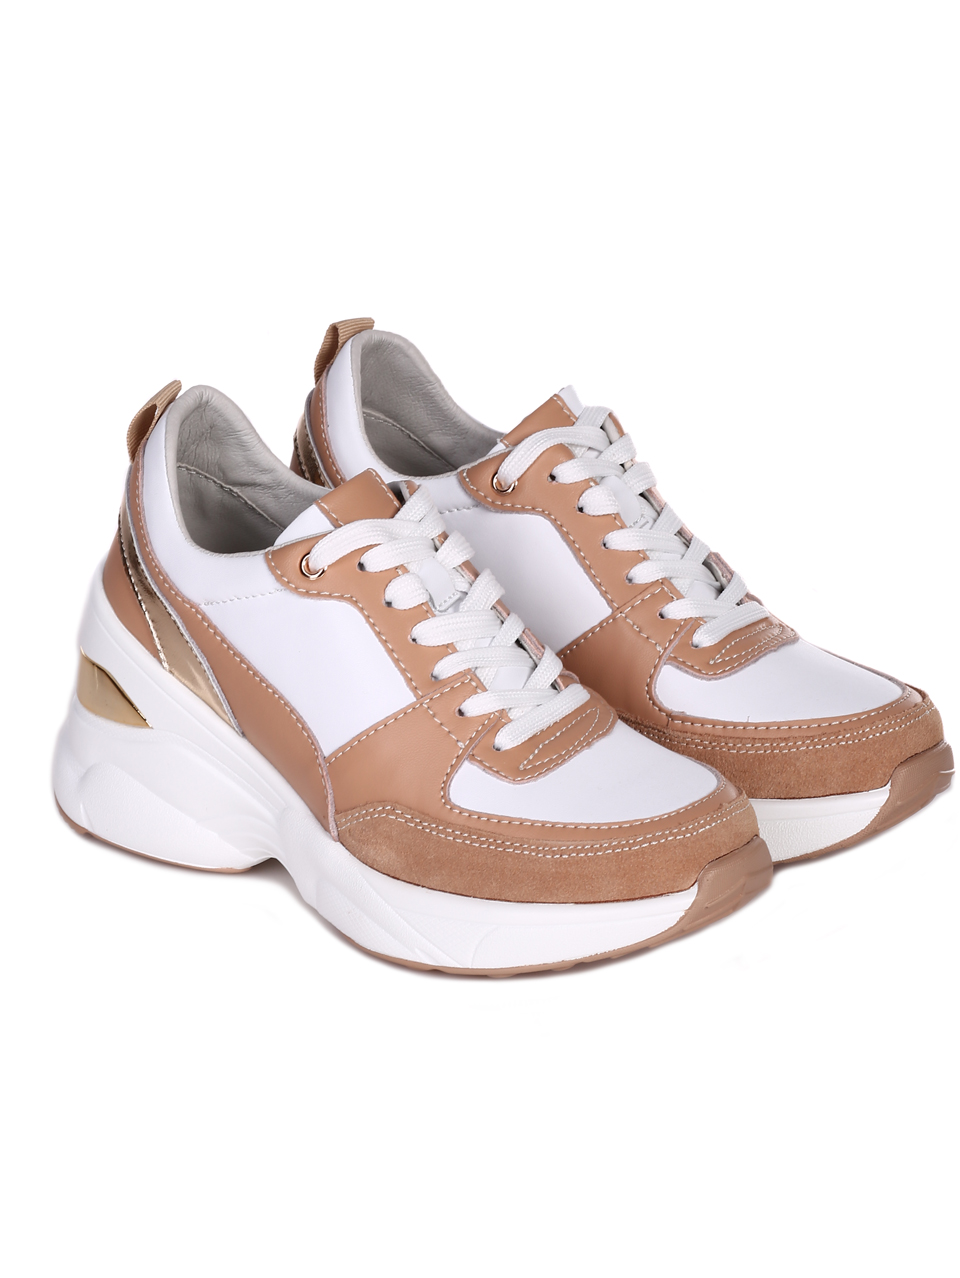 Ежедневни дамски обувки на платформа от естествена кожа и велур 3AF-23183 white/beige